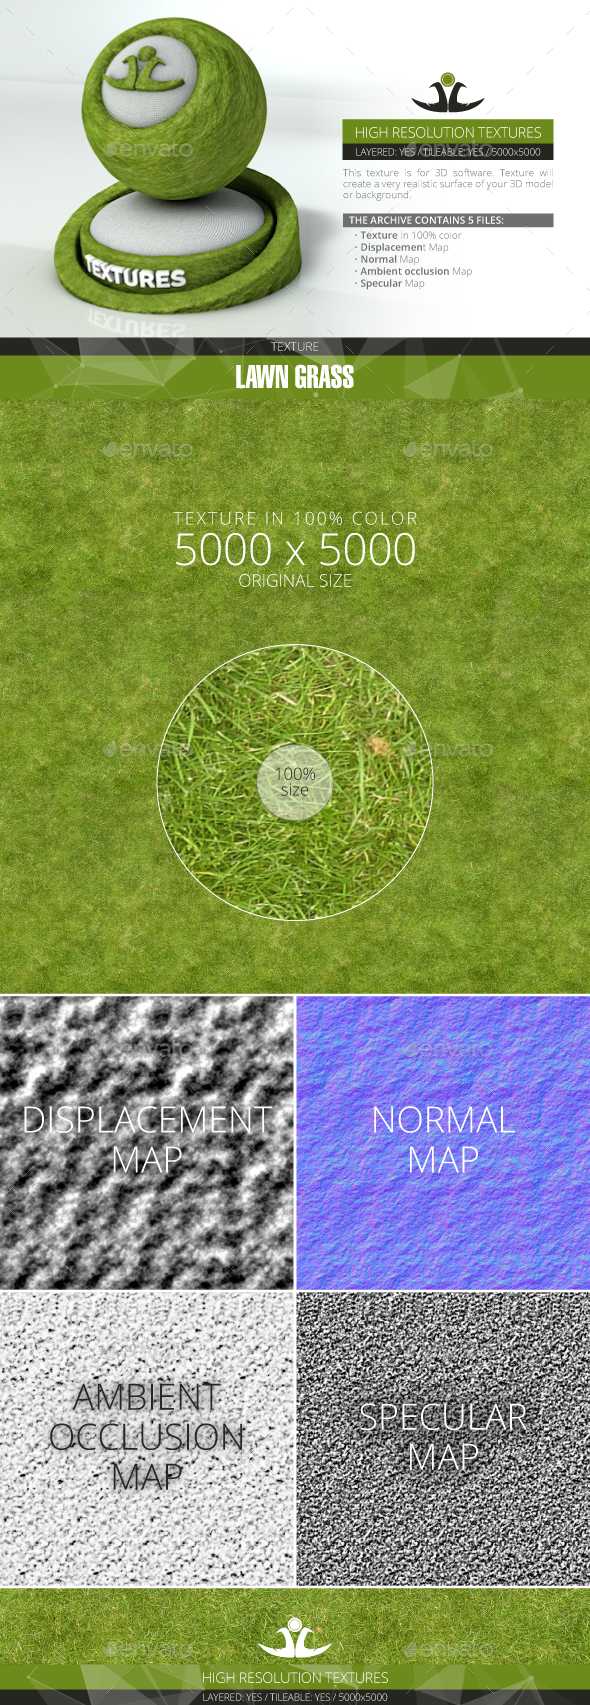 Lawn Grass - 3Docean 21001110